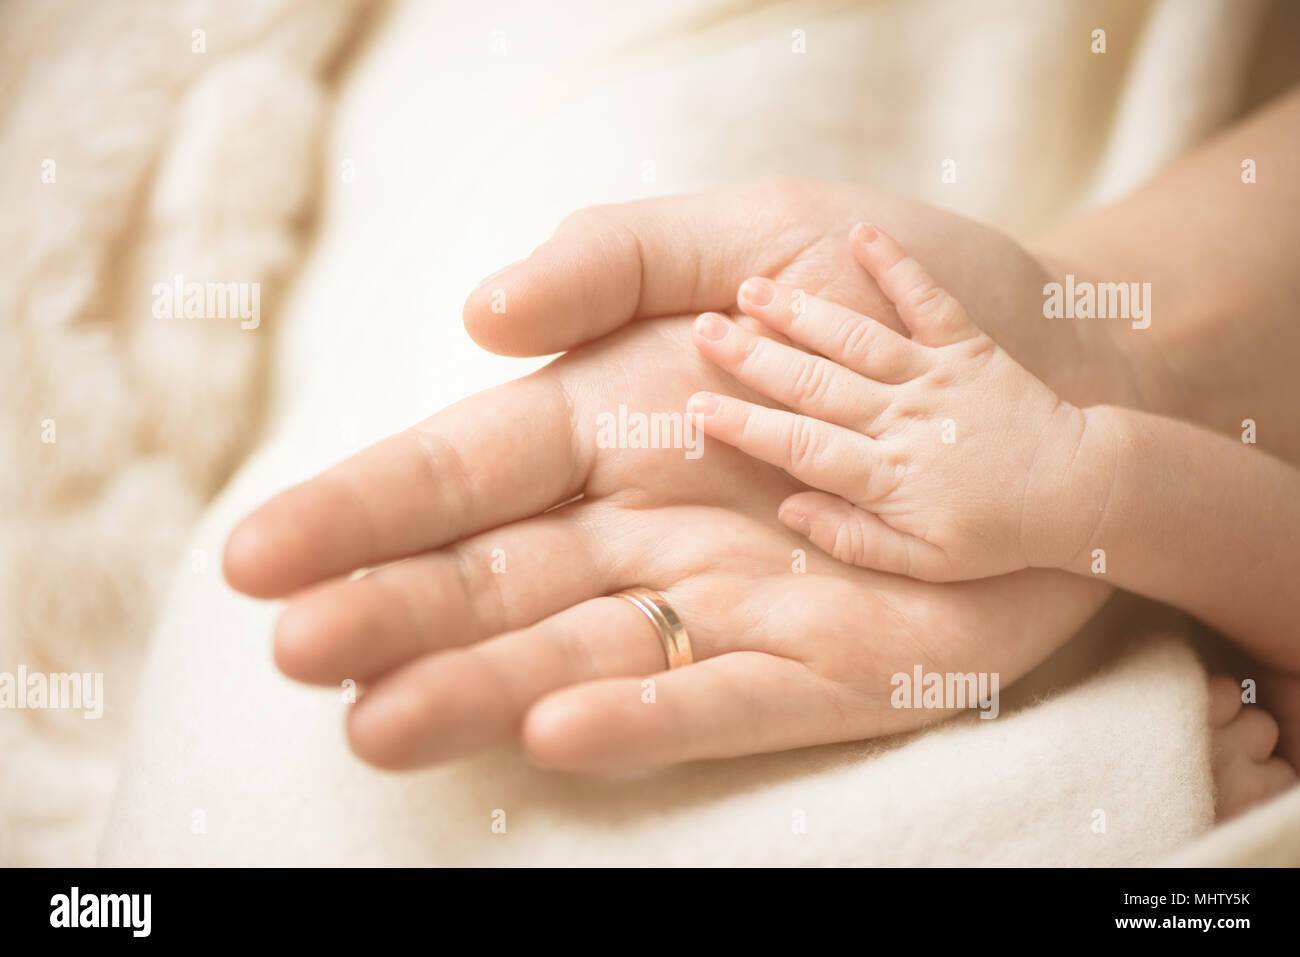 Bambino neonato mano. Primo piano della mano del bambino nelle mani dei genitori. La famiglia e la maternità e nascita del concetto. Foto Stock